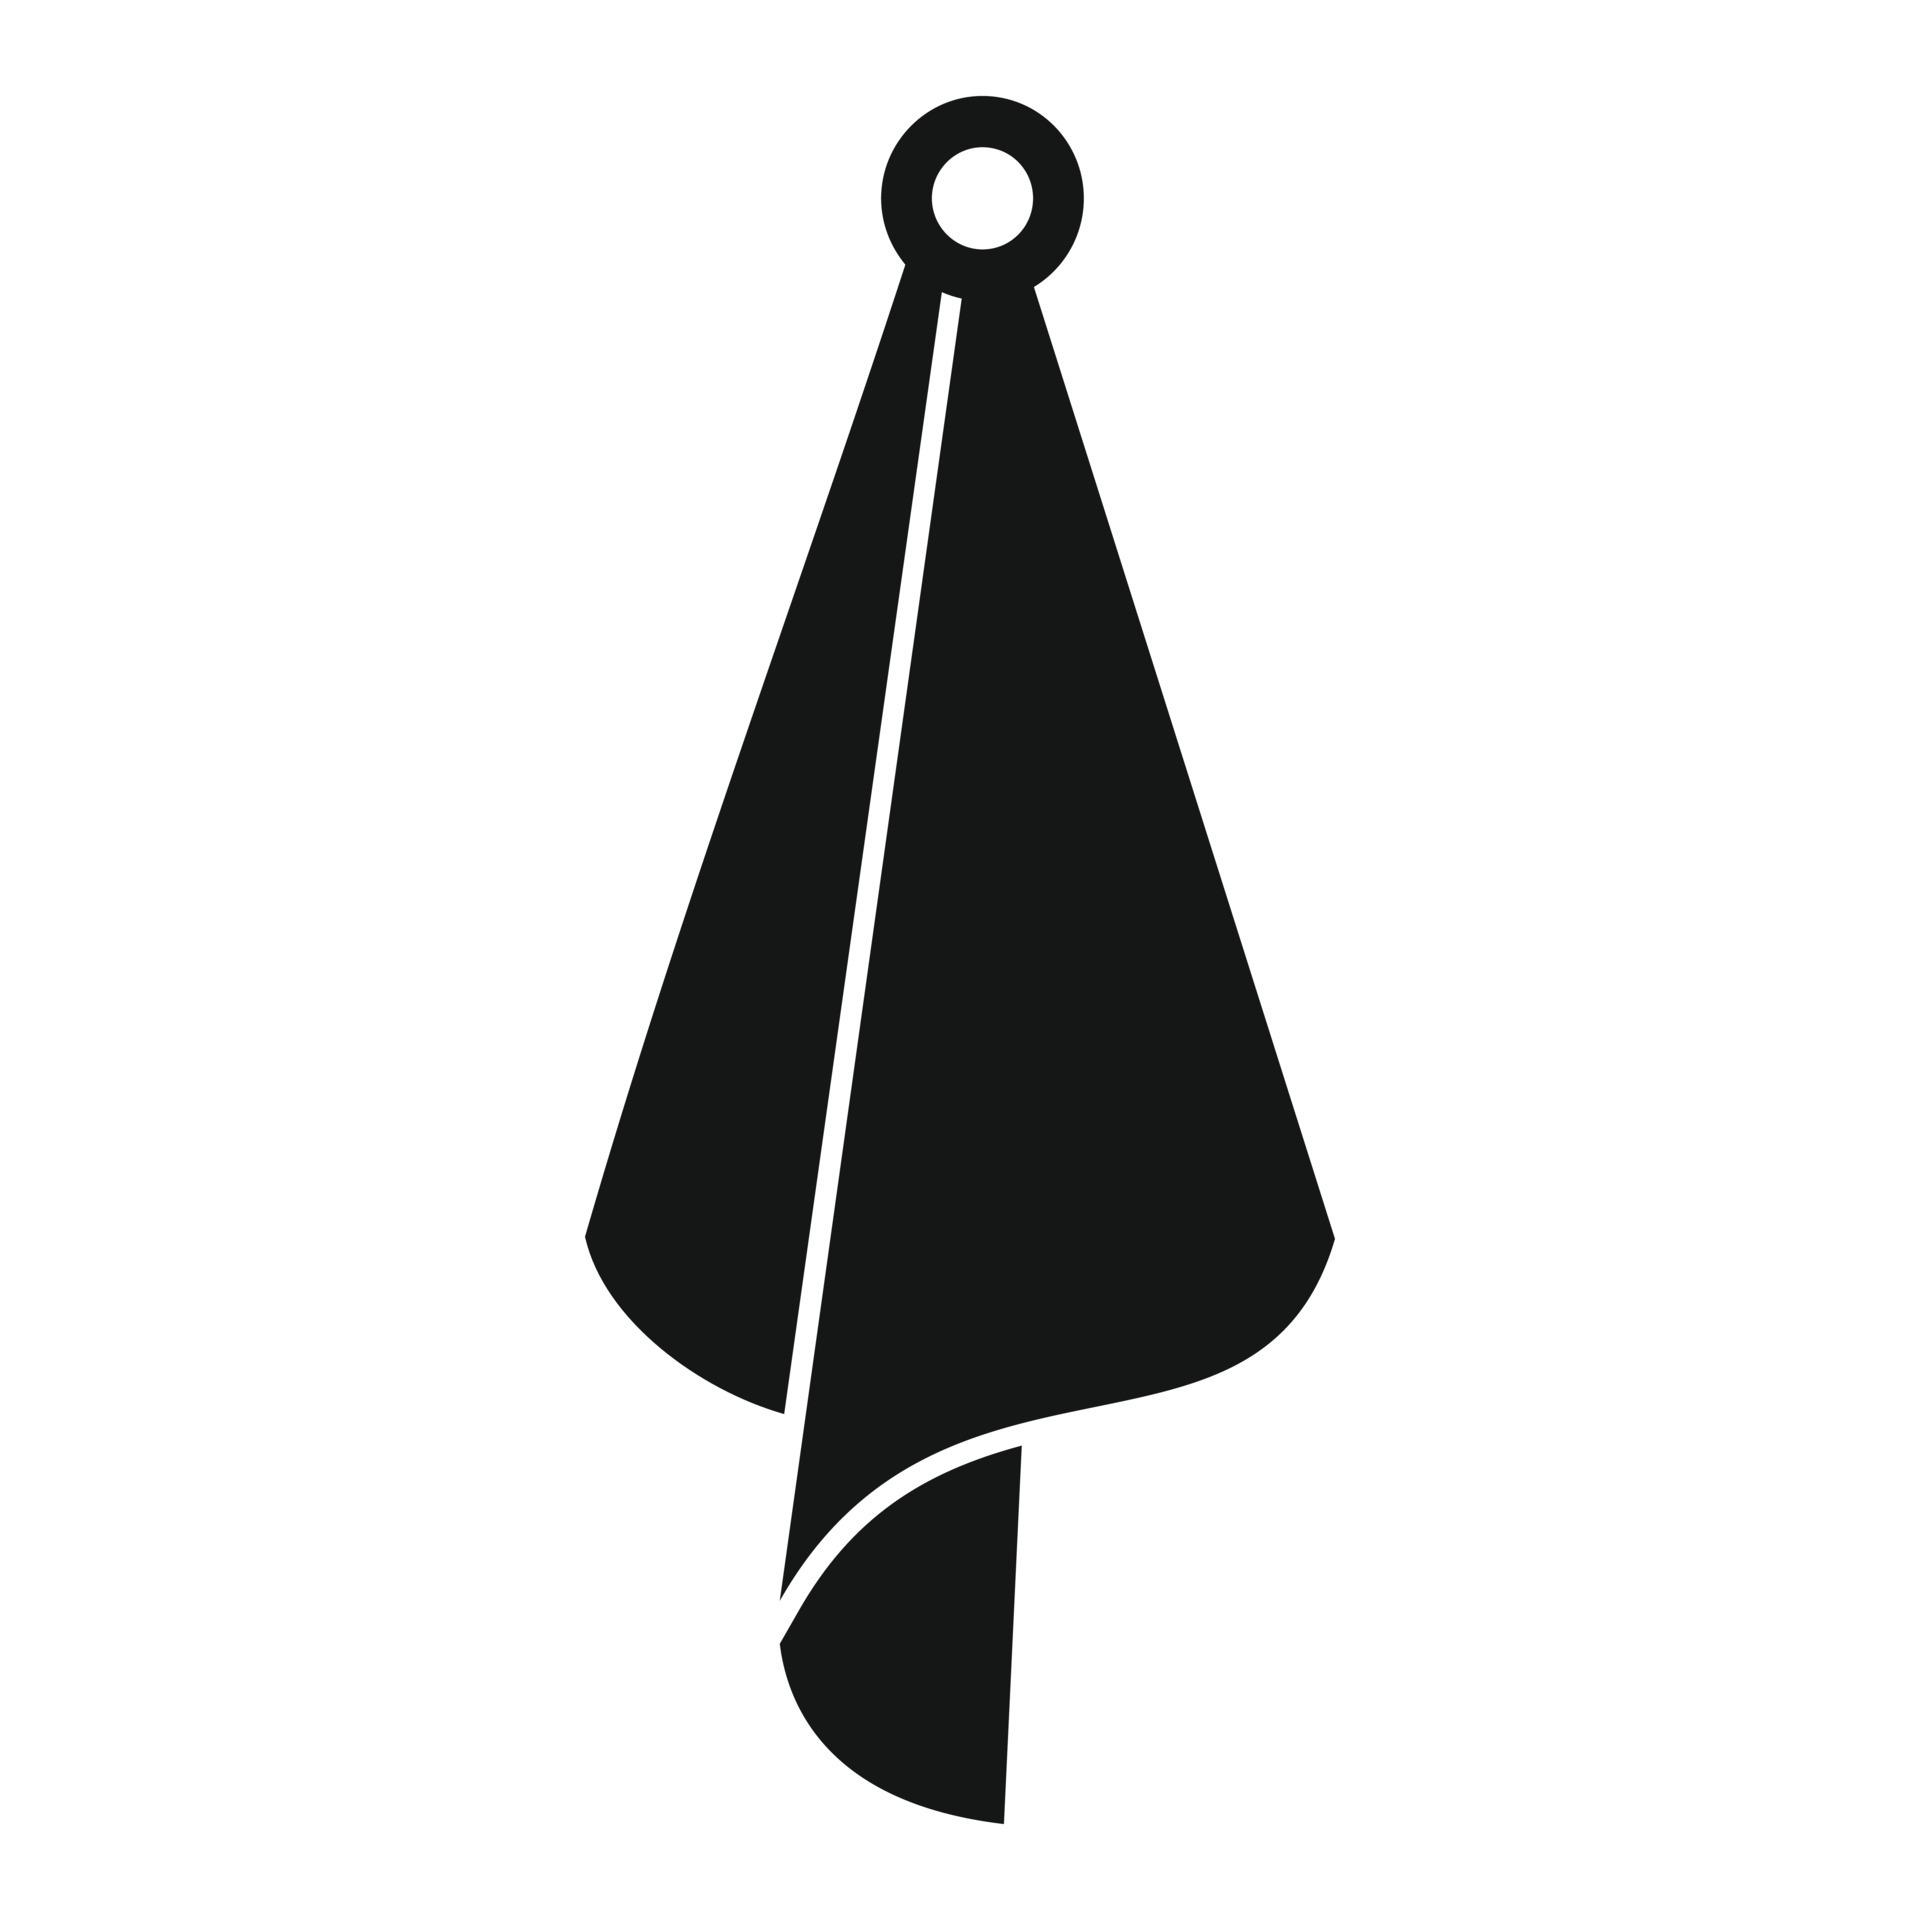 Handkerchief icon simple vector. Napkin towel 14865783 Vector Art at ...